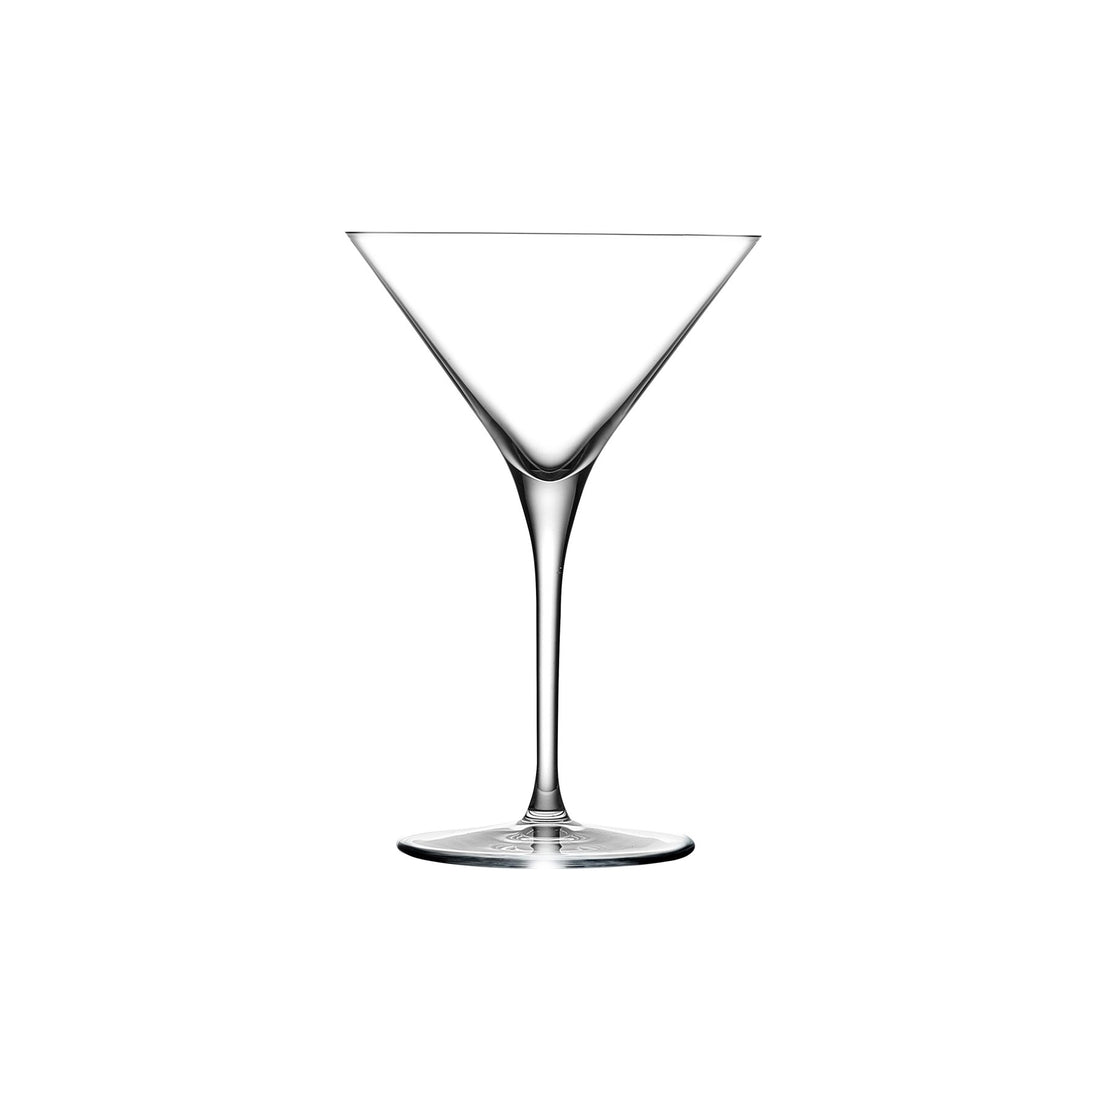 Vintage Hoya Desire Crystal Martini Cocktail Glasses Set of 2 OIB